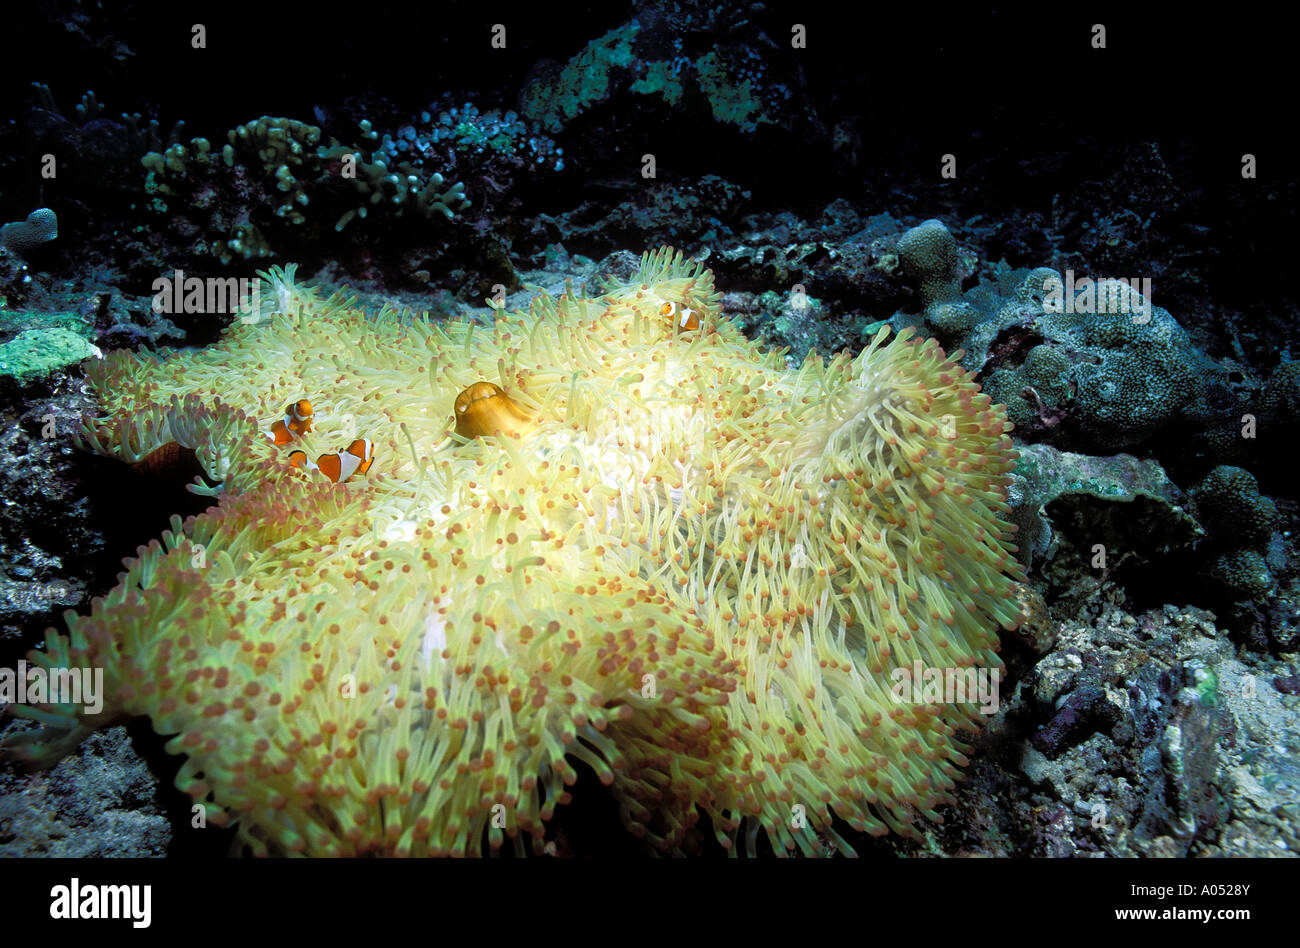 Anémone de mer magnifique blanchie, Heteractis magnifica, en raison d'eaux chaudes portées par El Nino. Malaisie Bornéo. Banque D'Images